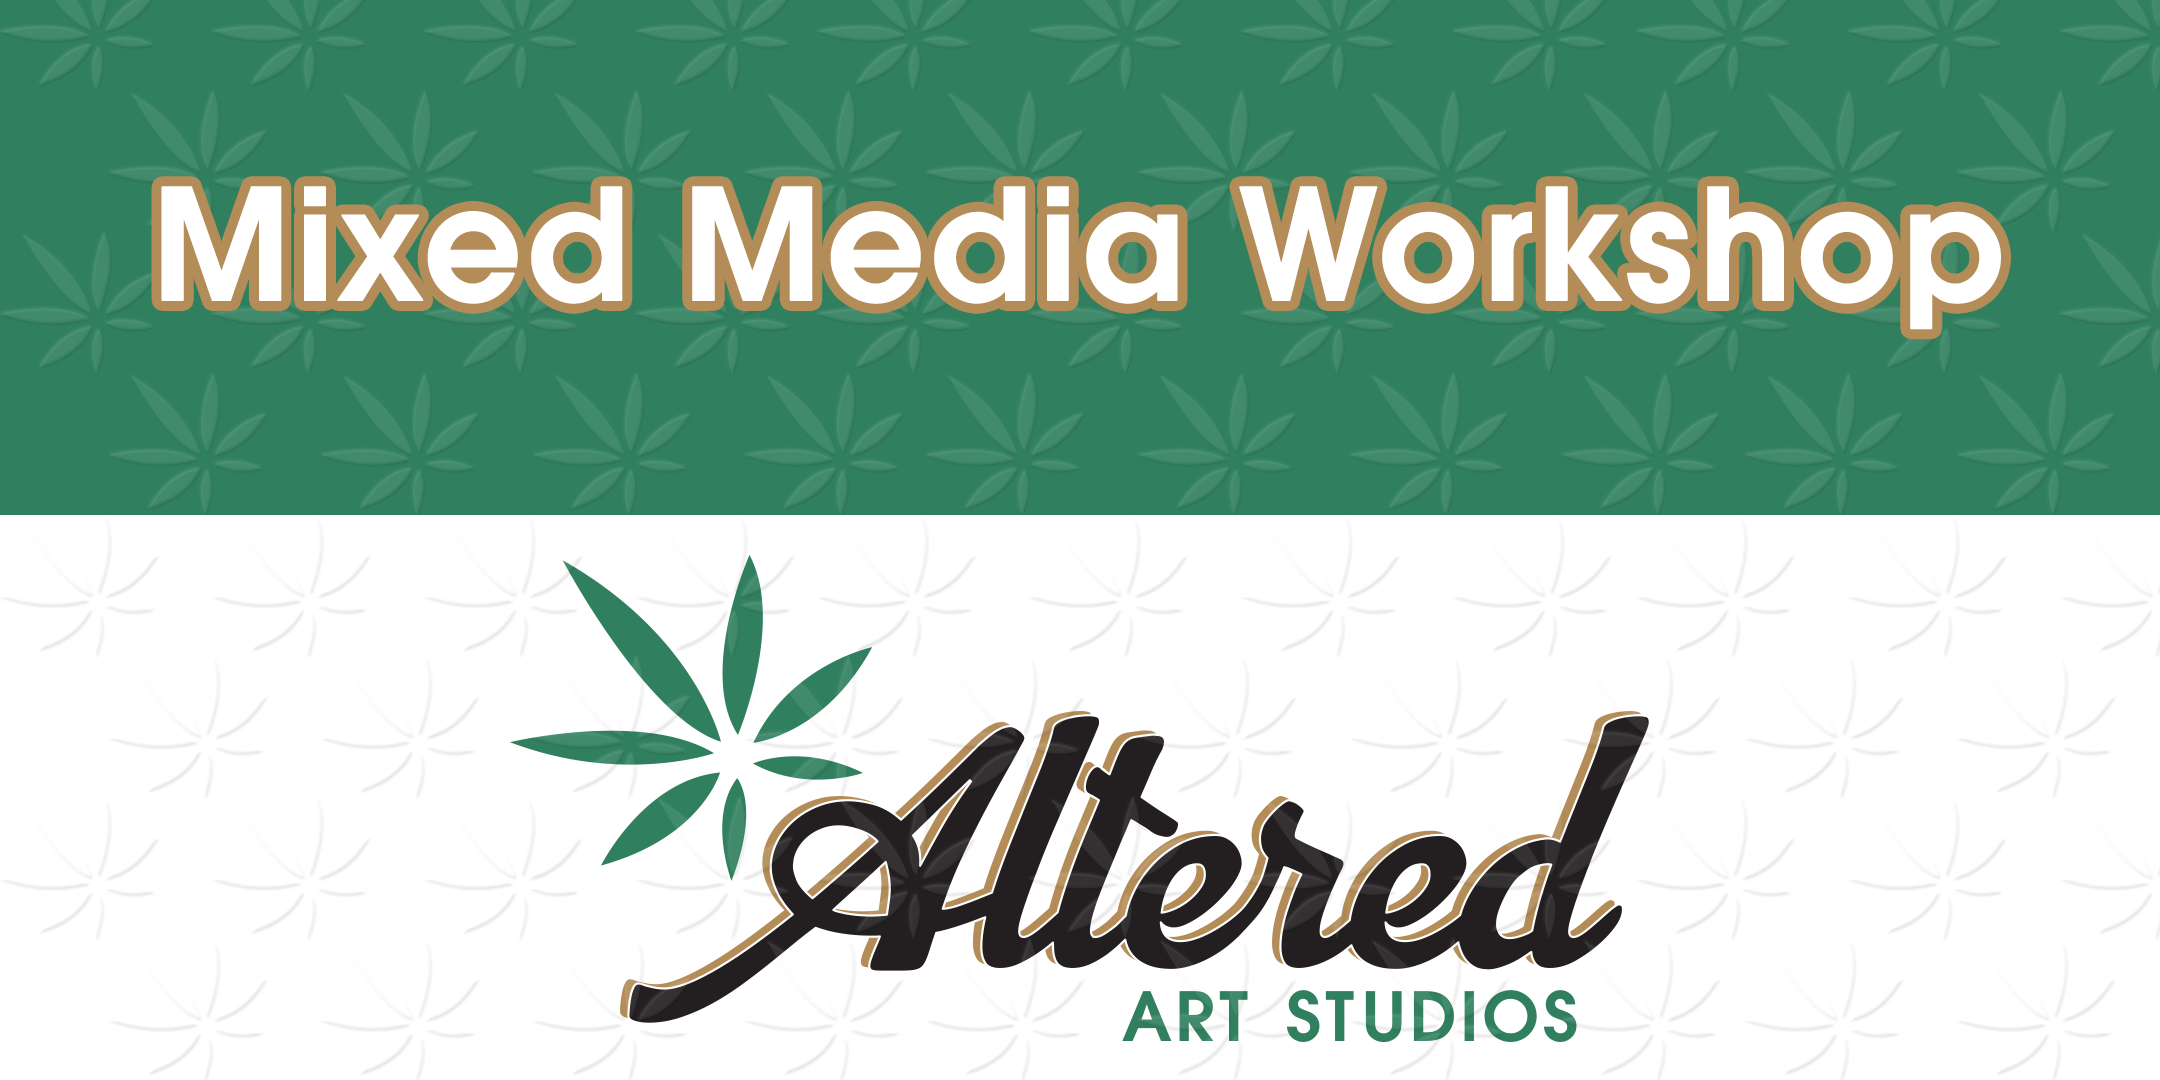 Mixed Media Workshop